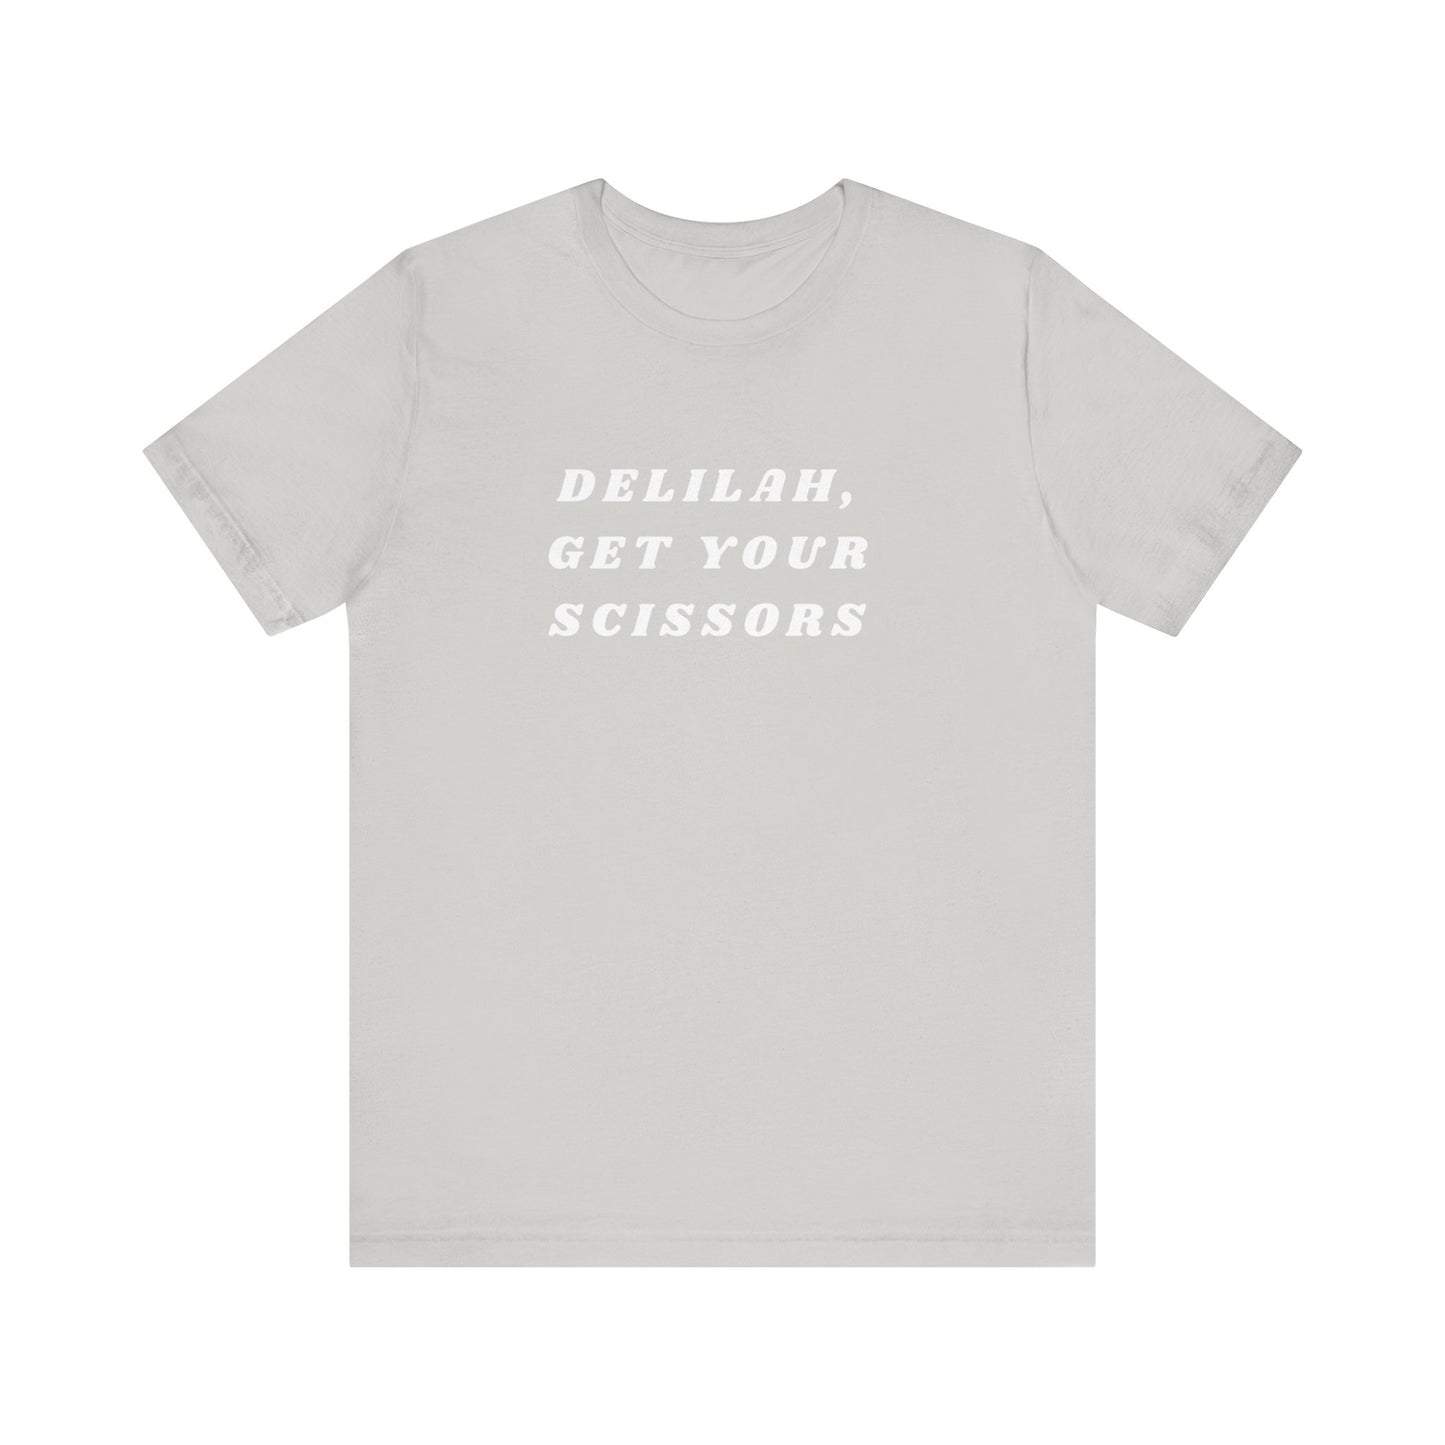 Delilah, Get Your Scissors Unisex Jersey Short Sleeve Tee